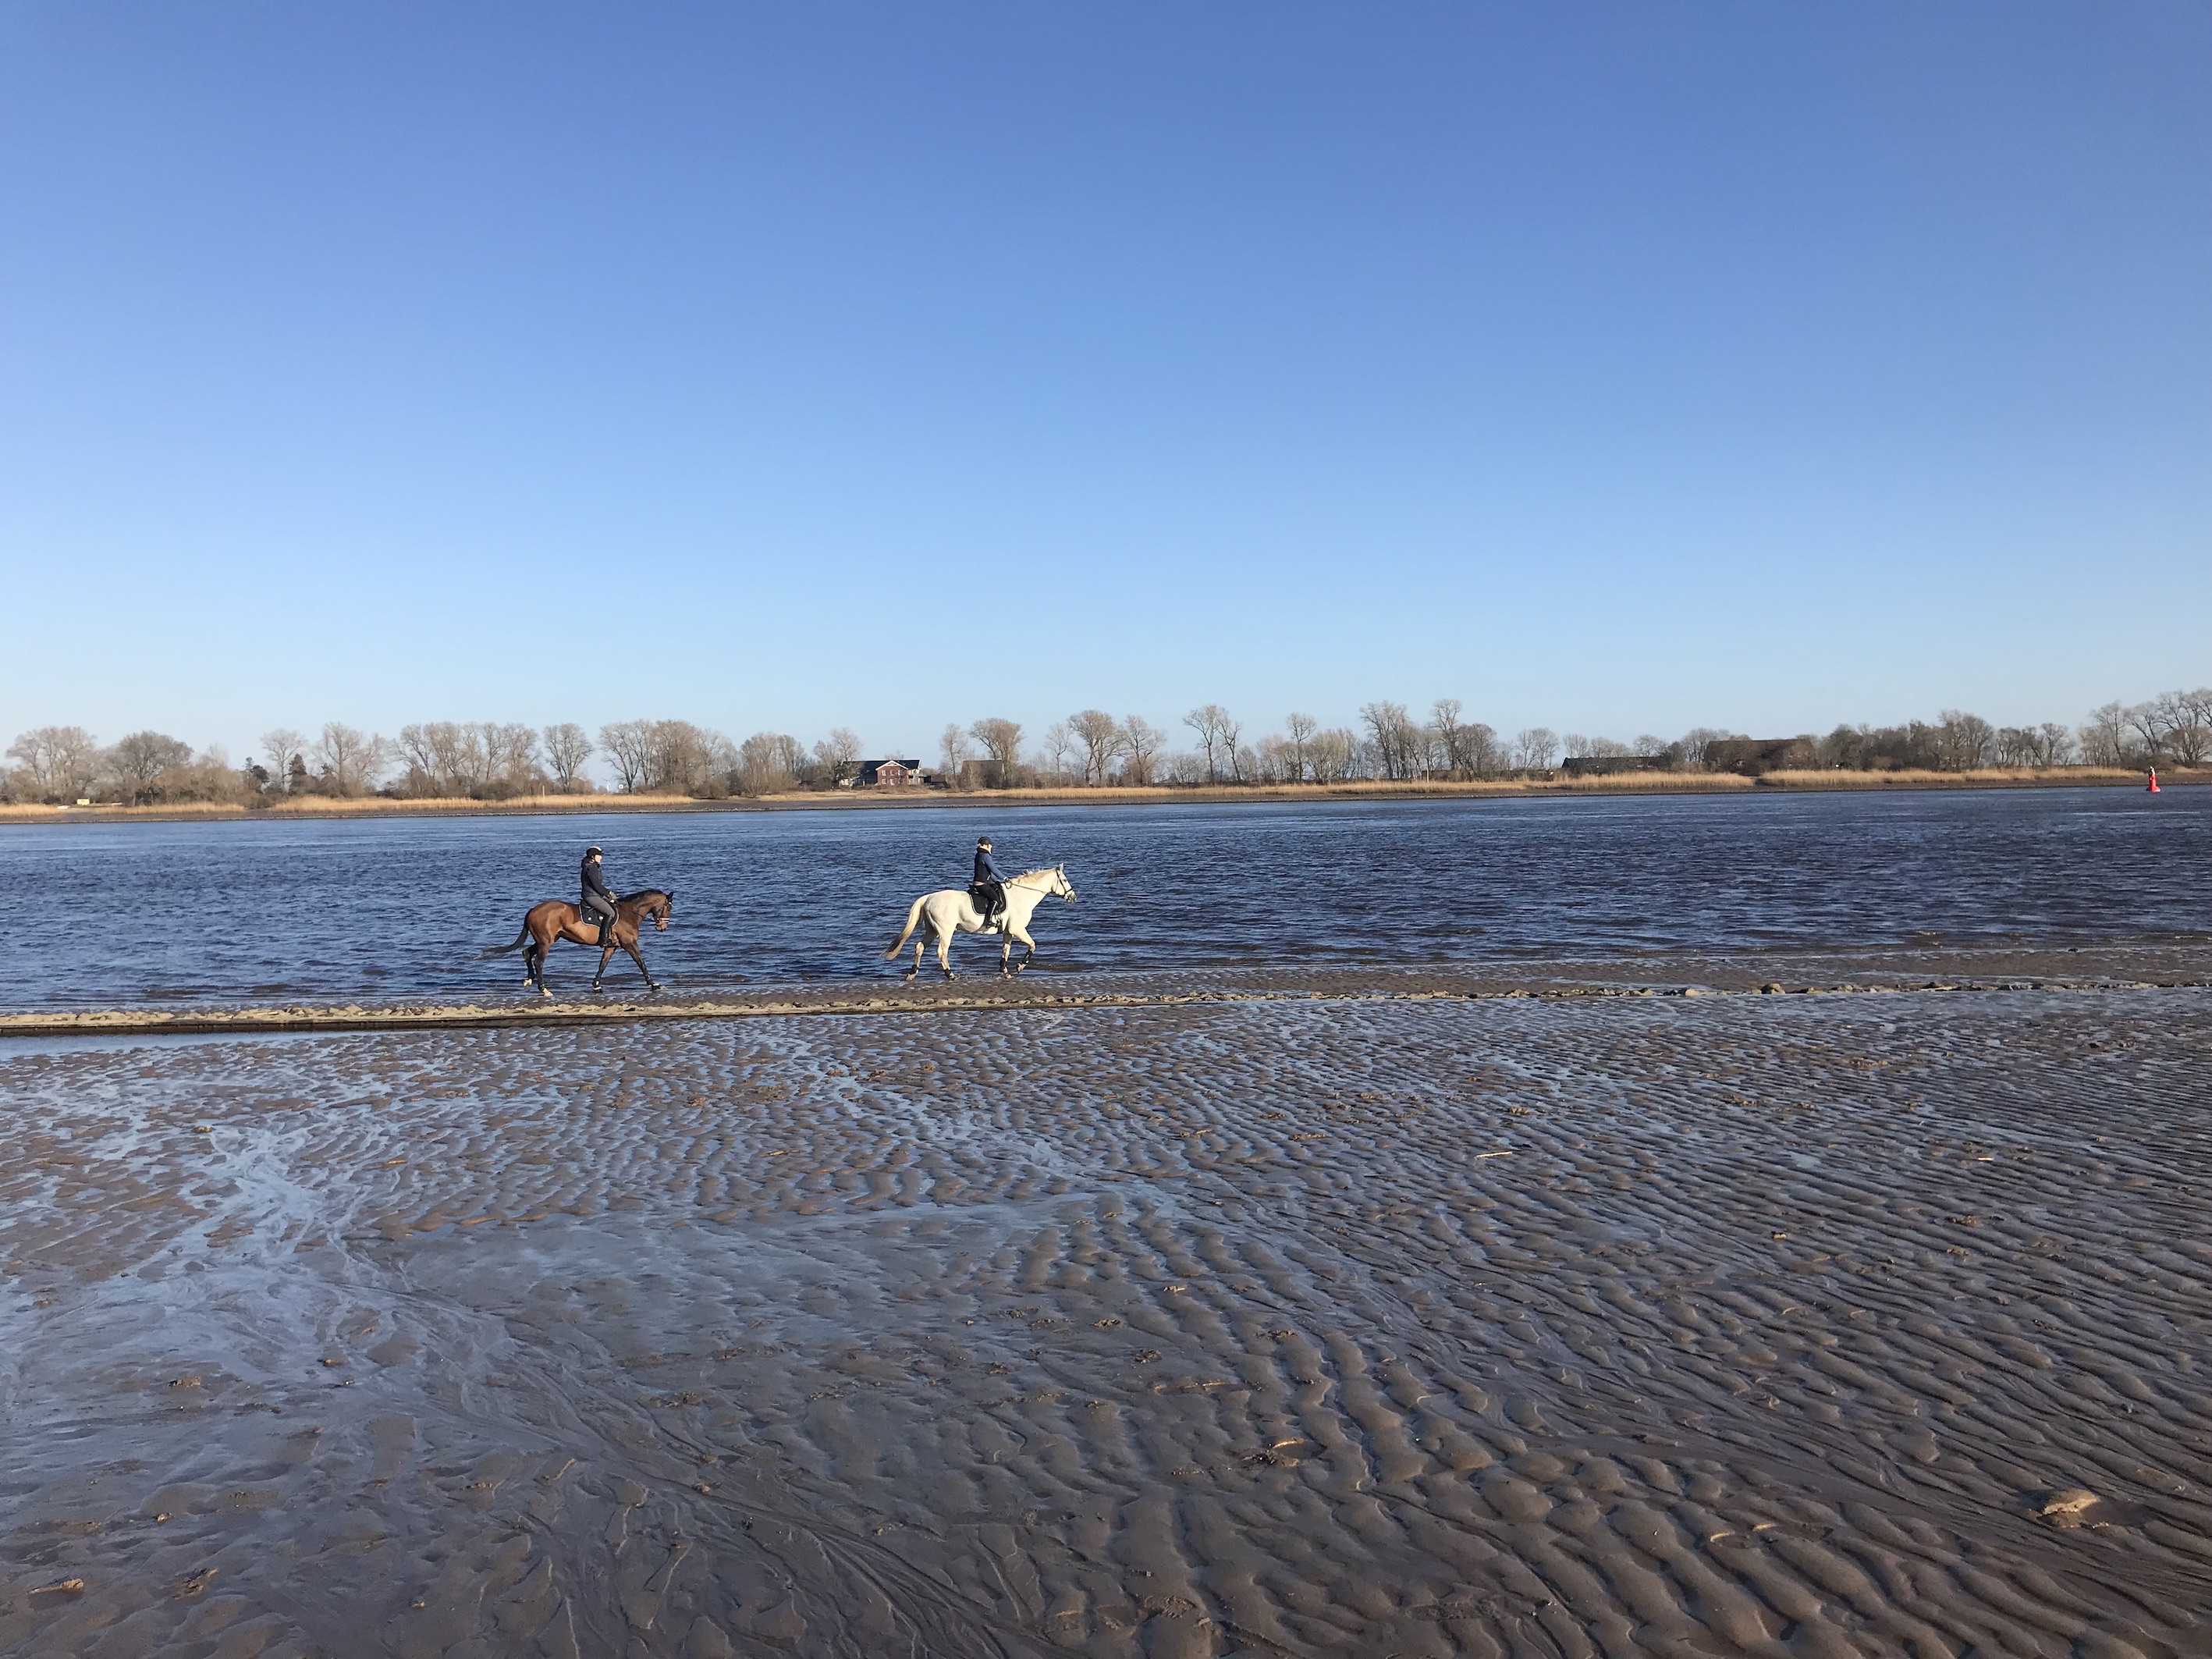 Strandritt, zwei Reitpferde, am Weserstrand bei Oberhammelwarden, Wesermarsch, ablaufendes Wasser, Rinnen im Sand